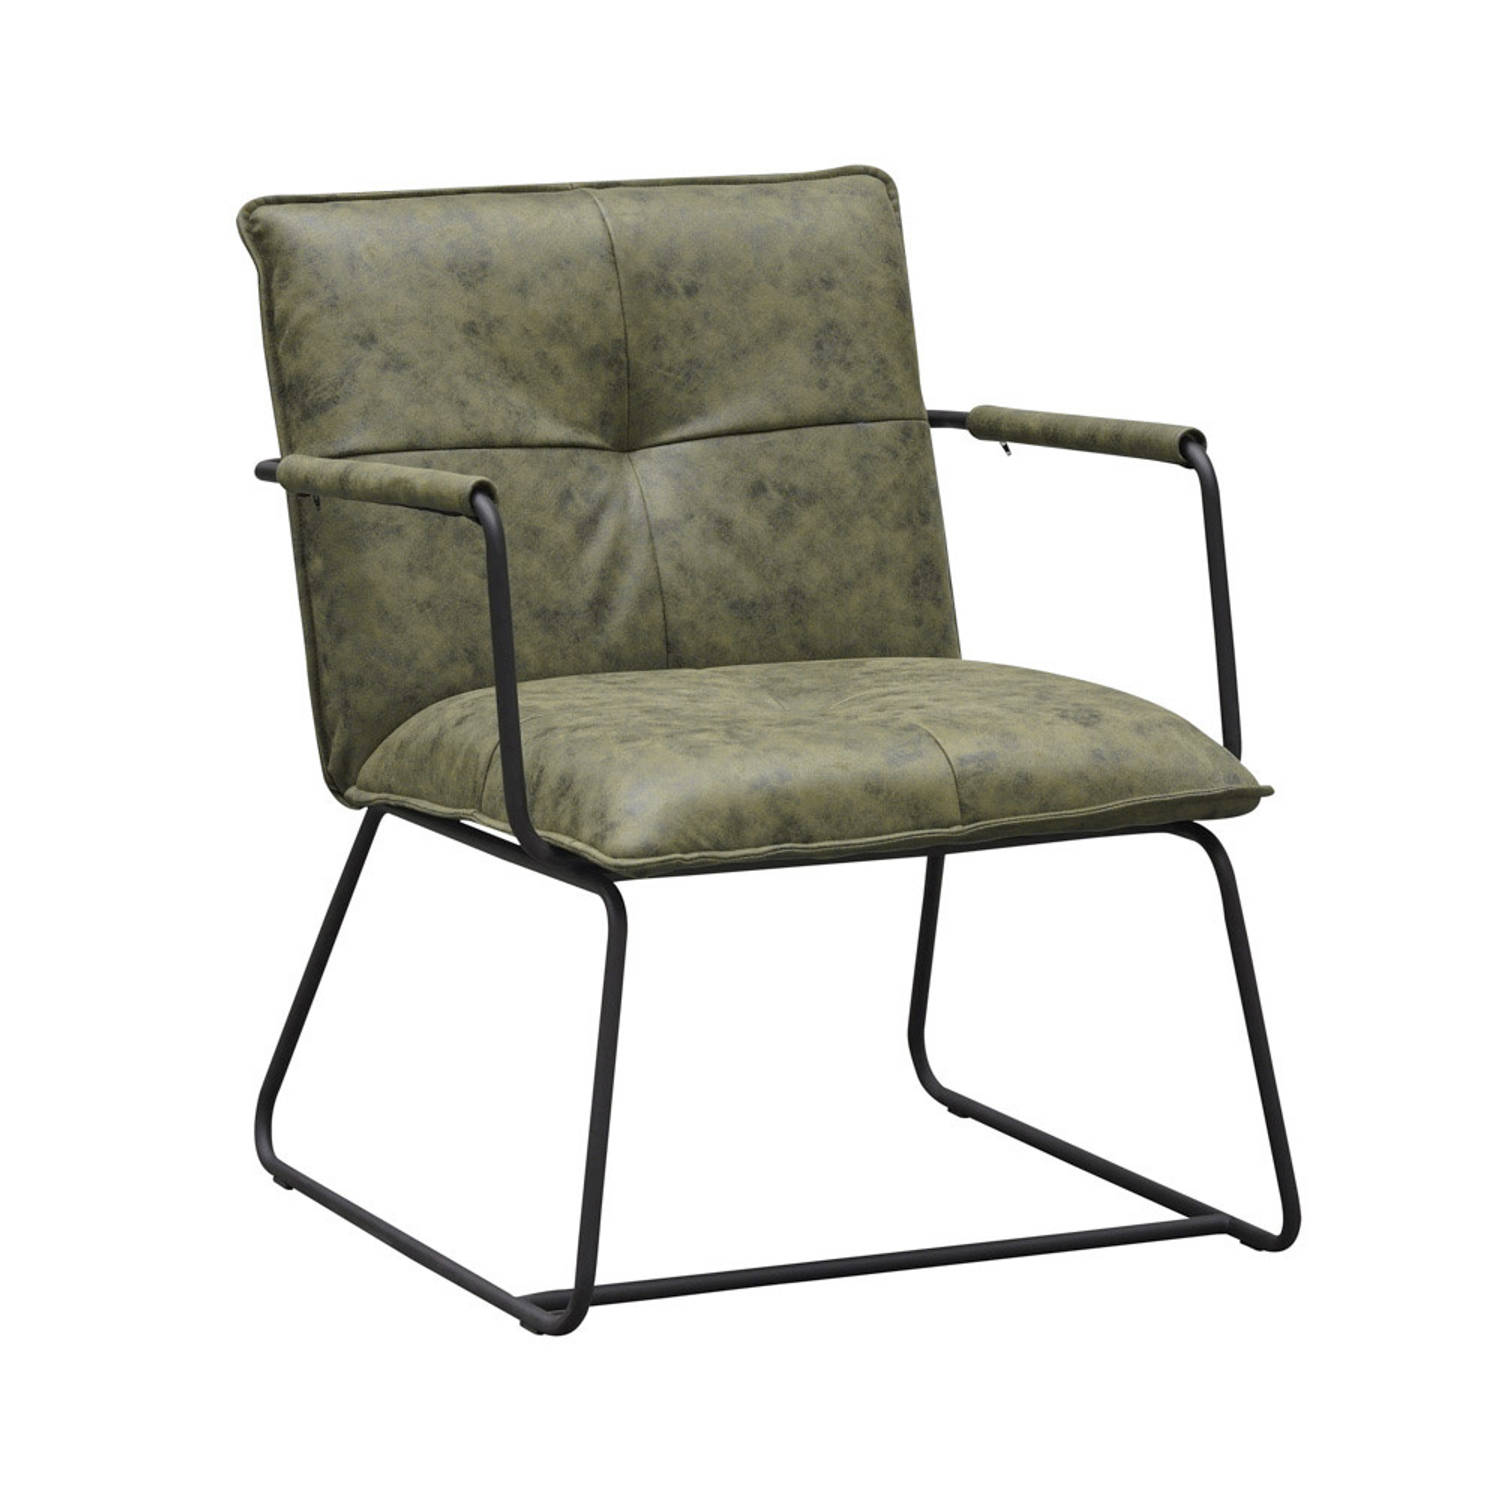 Industriële fauteuil Hailey groen ecoleder